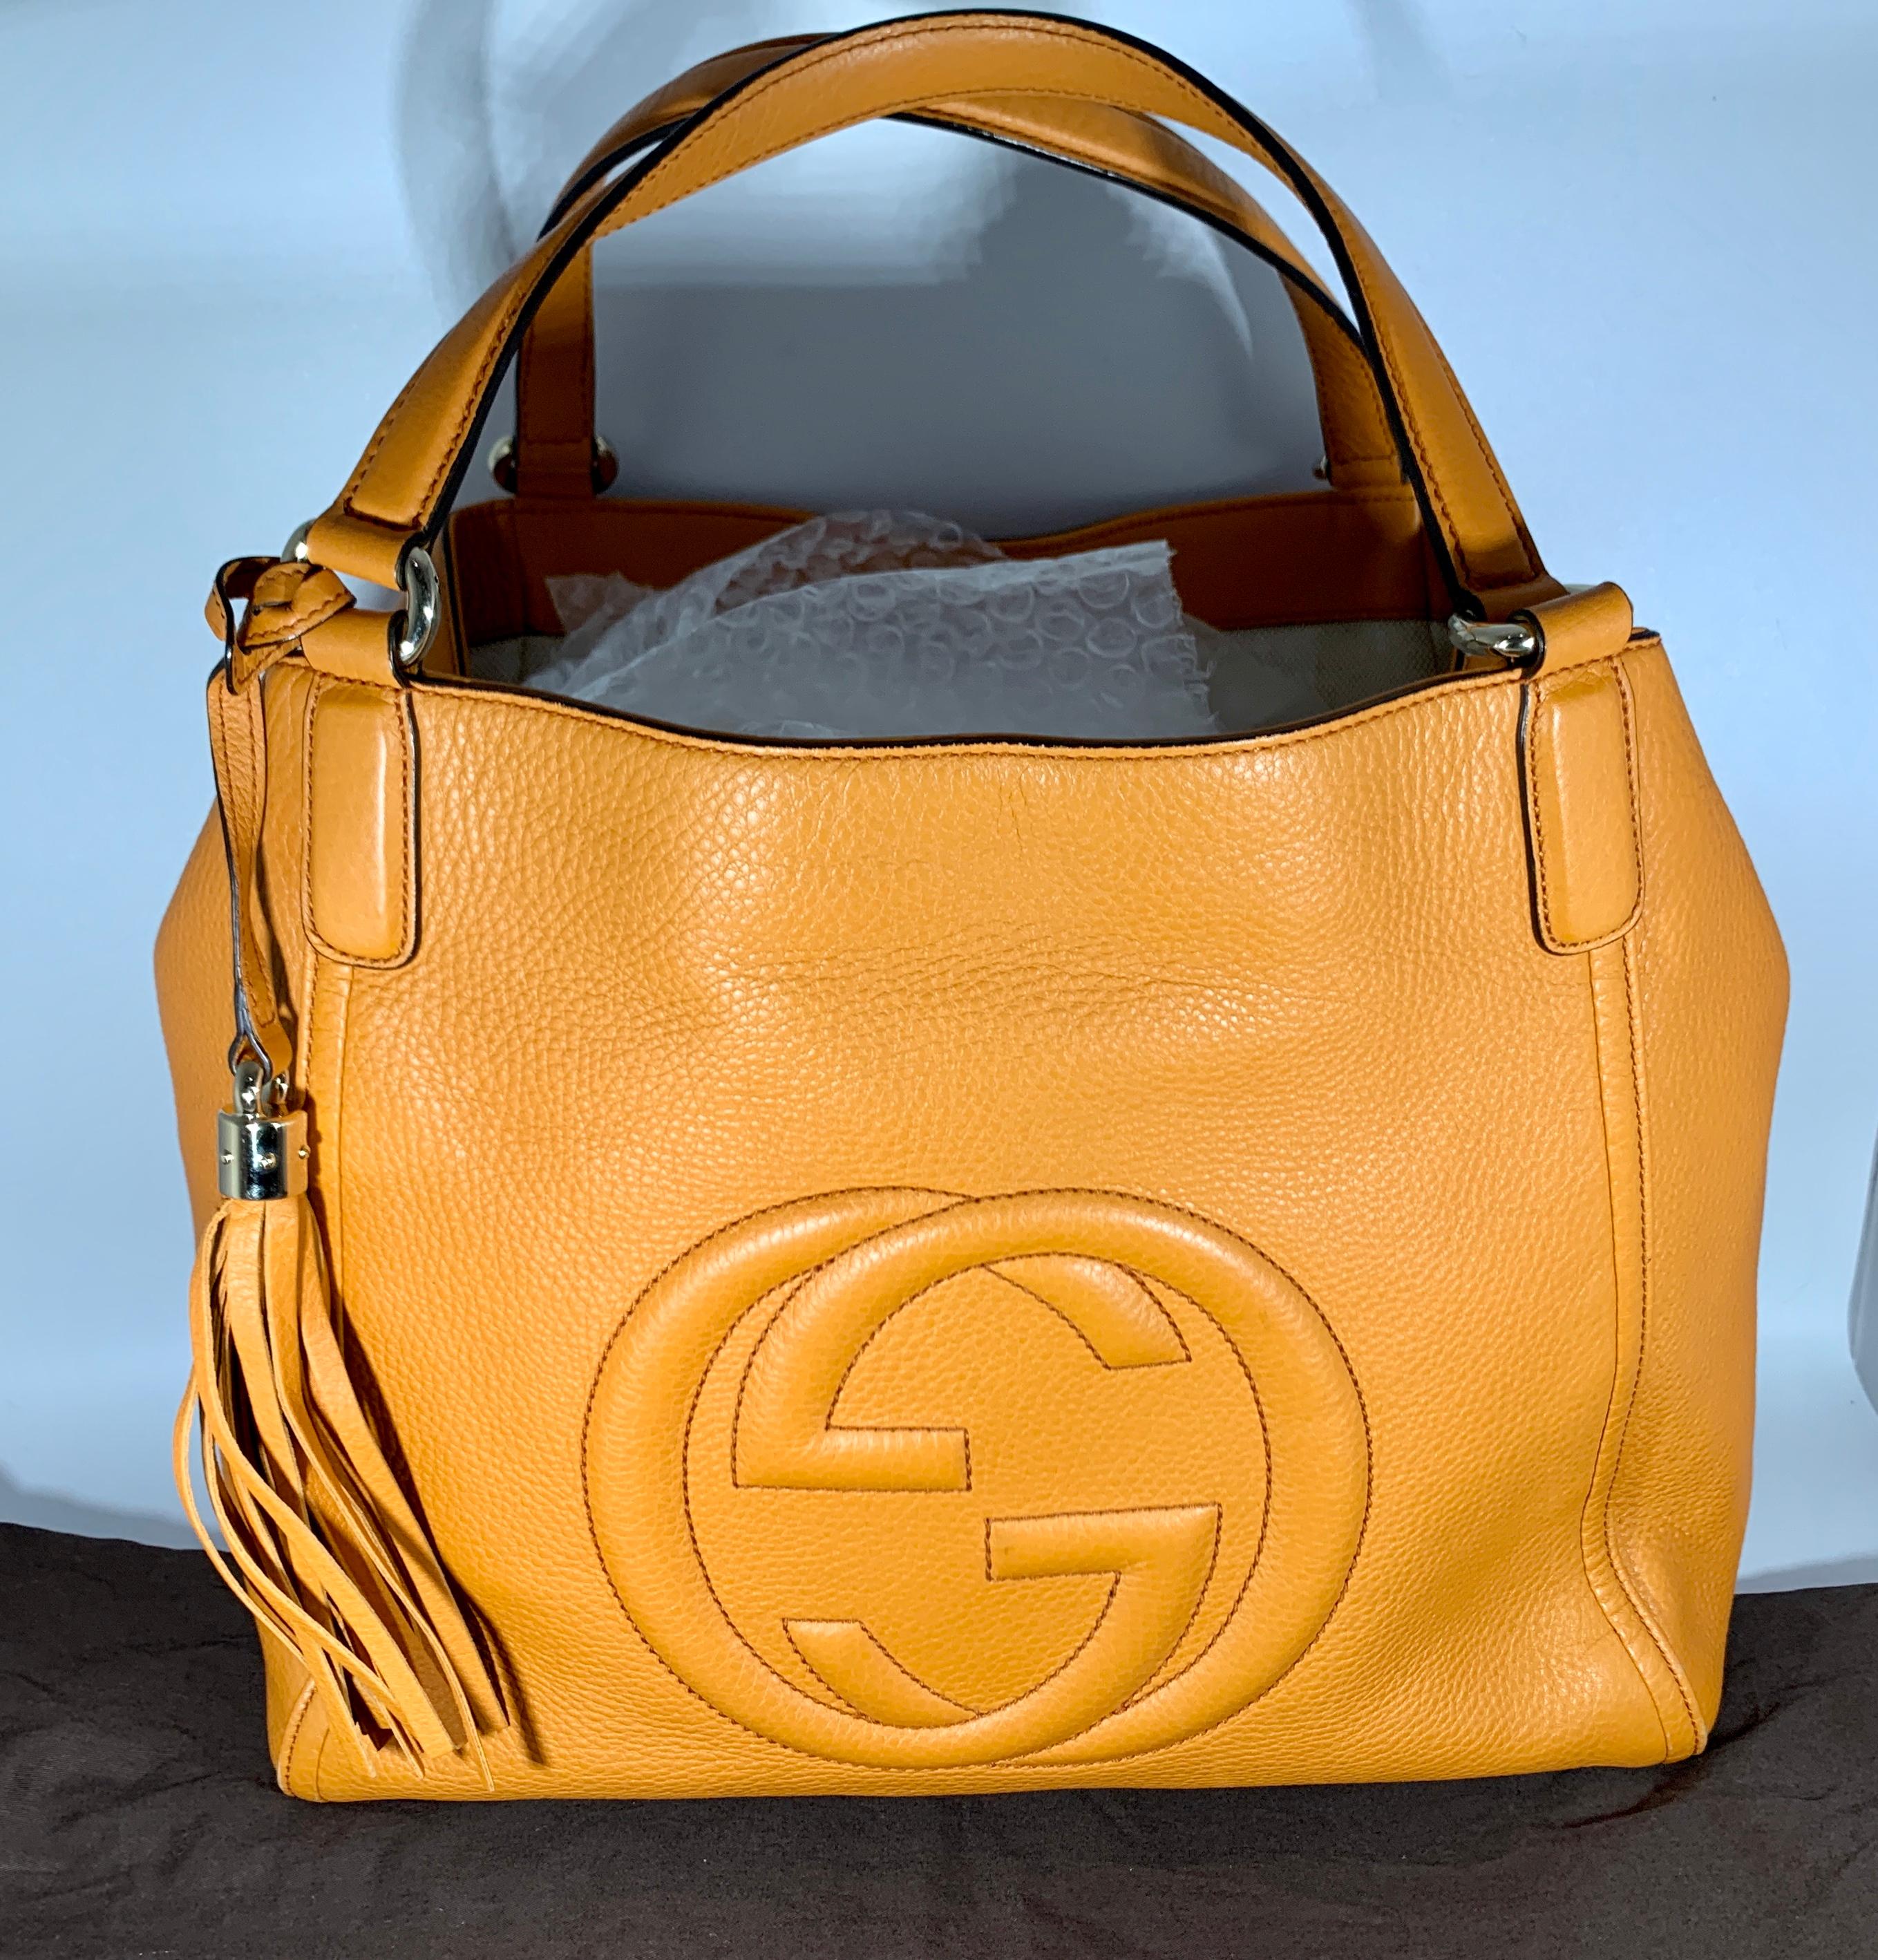 Gucci  Hand Bag Soho Leather Shoulder Bag, Orange Chic Tote 1